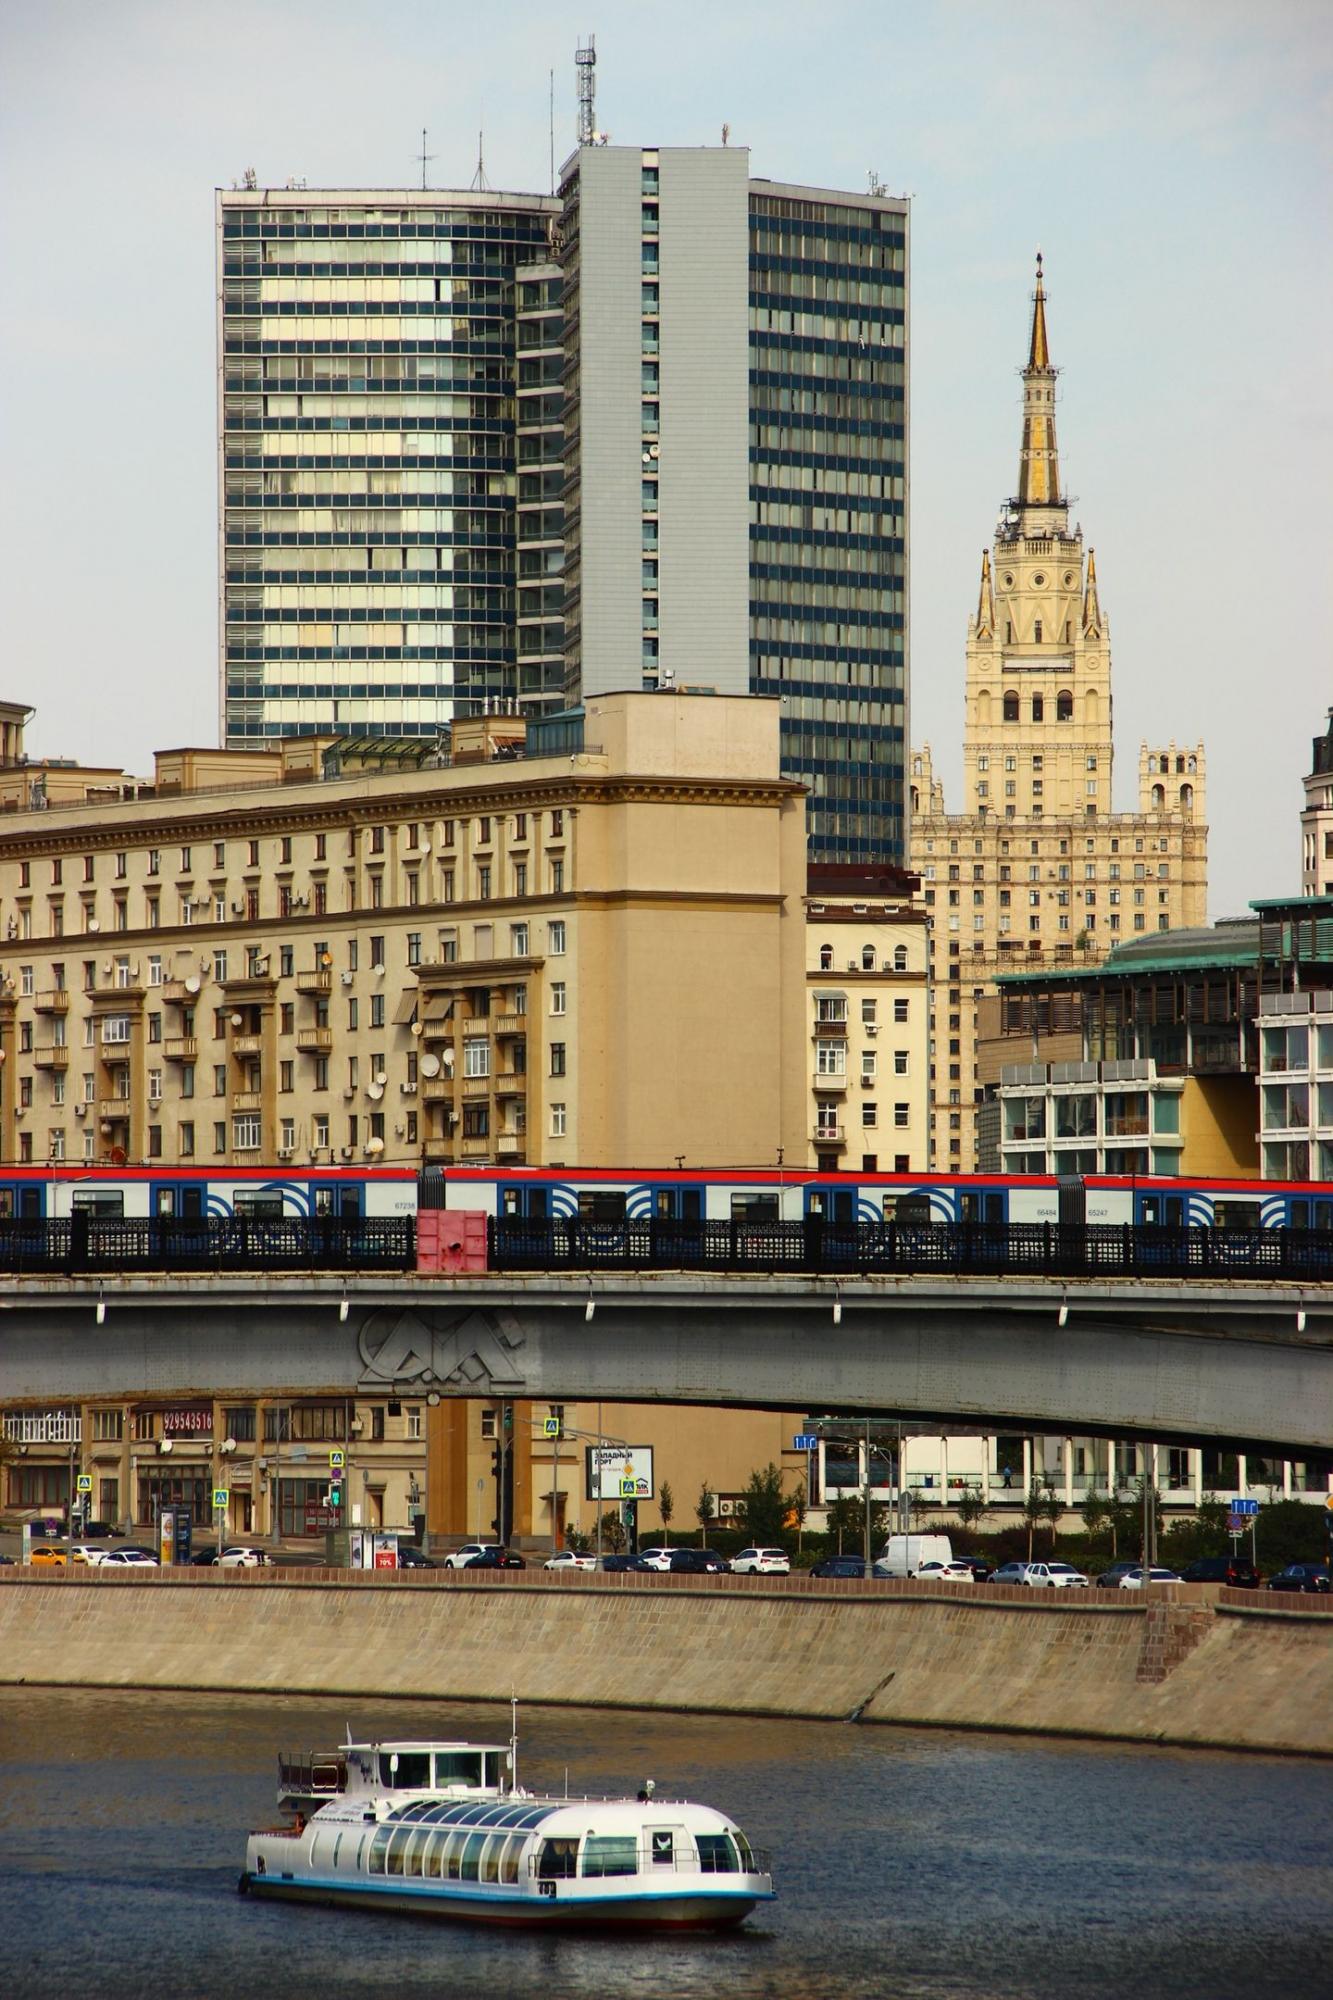 Москва 